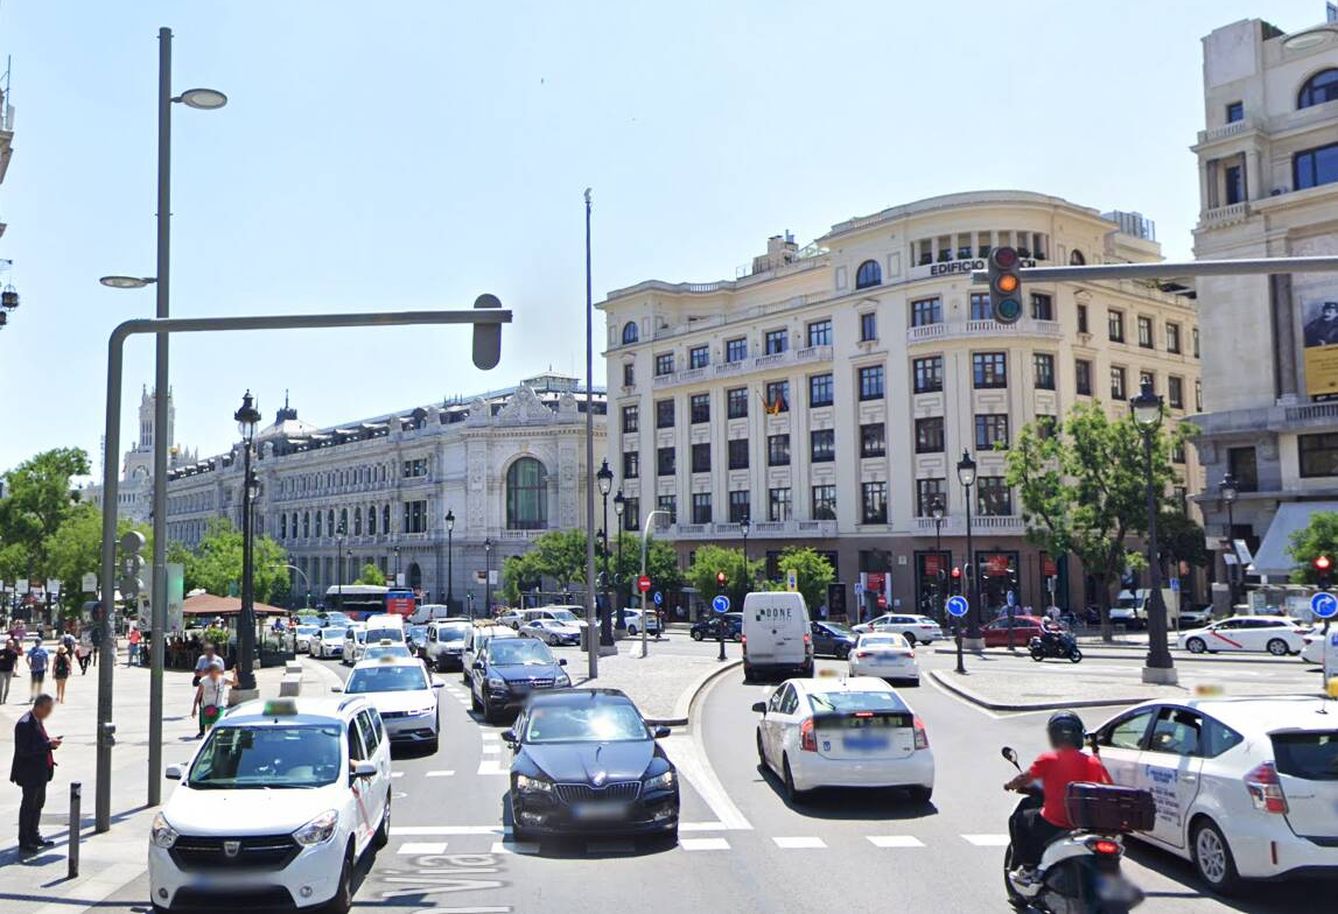 Diferencia de las farolas entre las calles de Alcalá y Gran Vía. (Streetview)